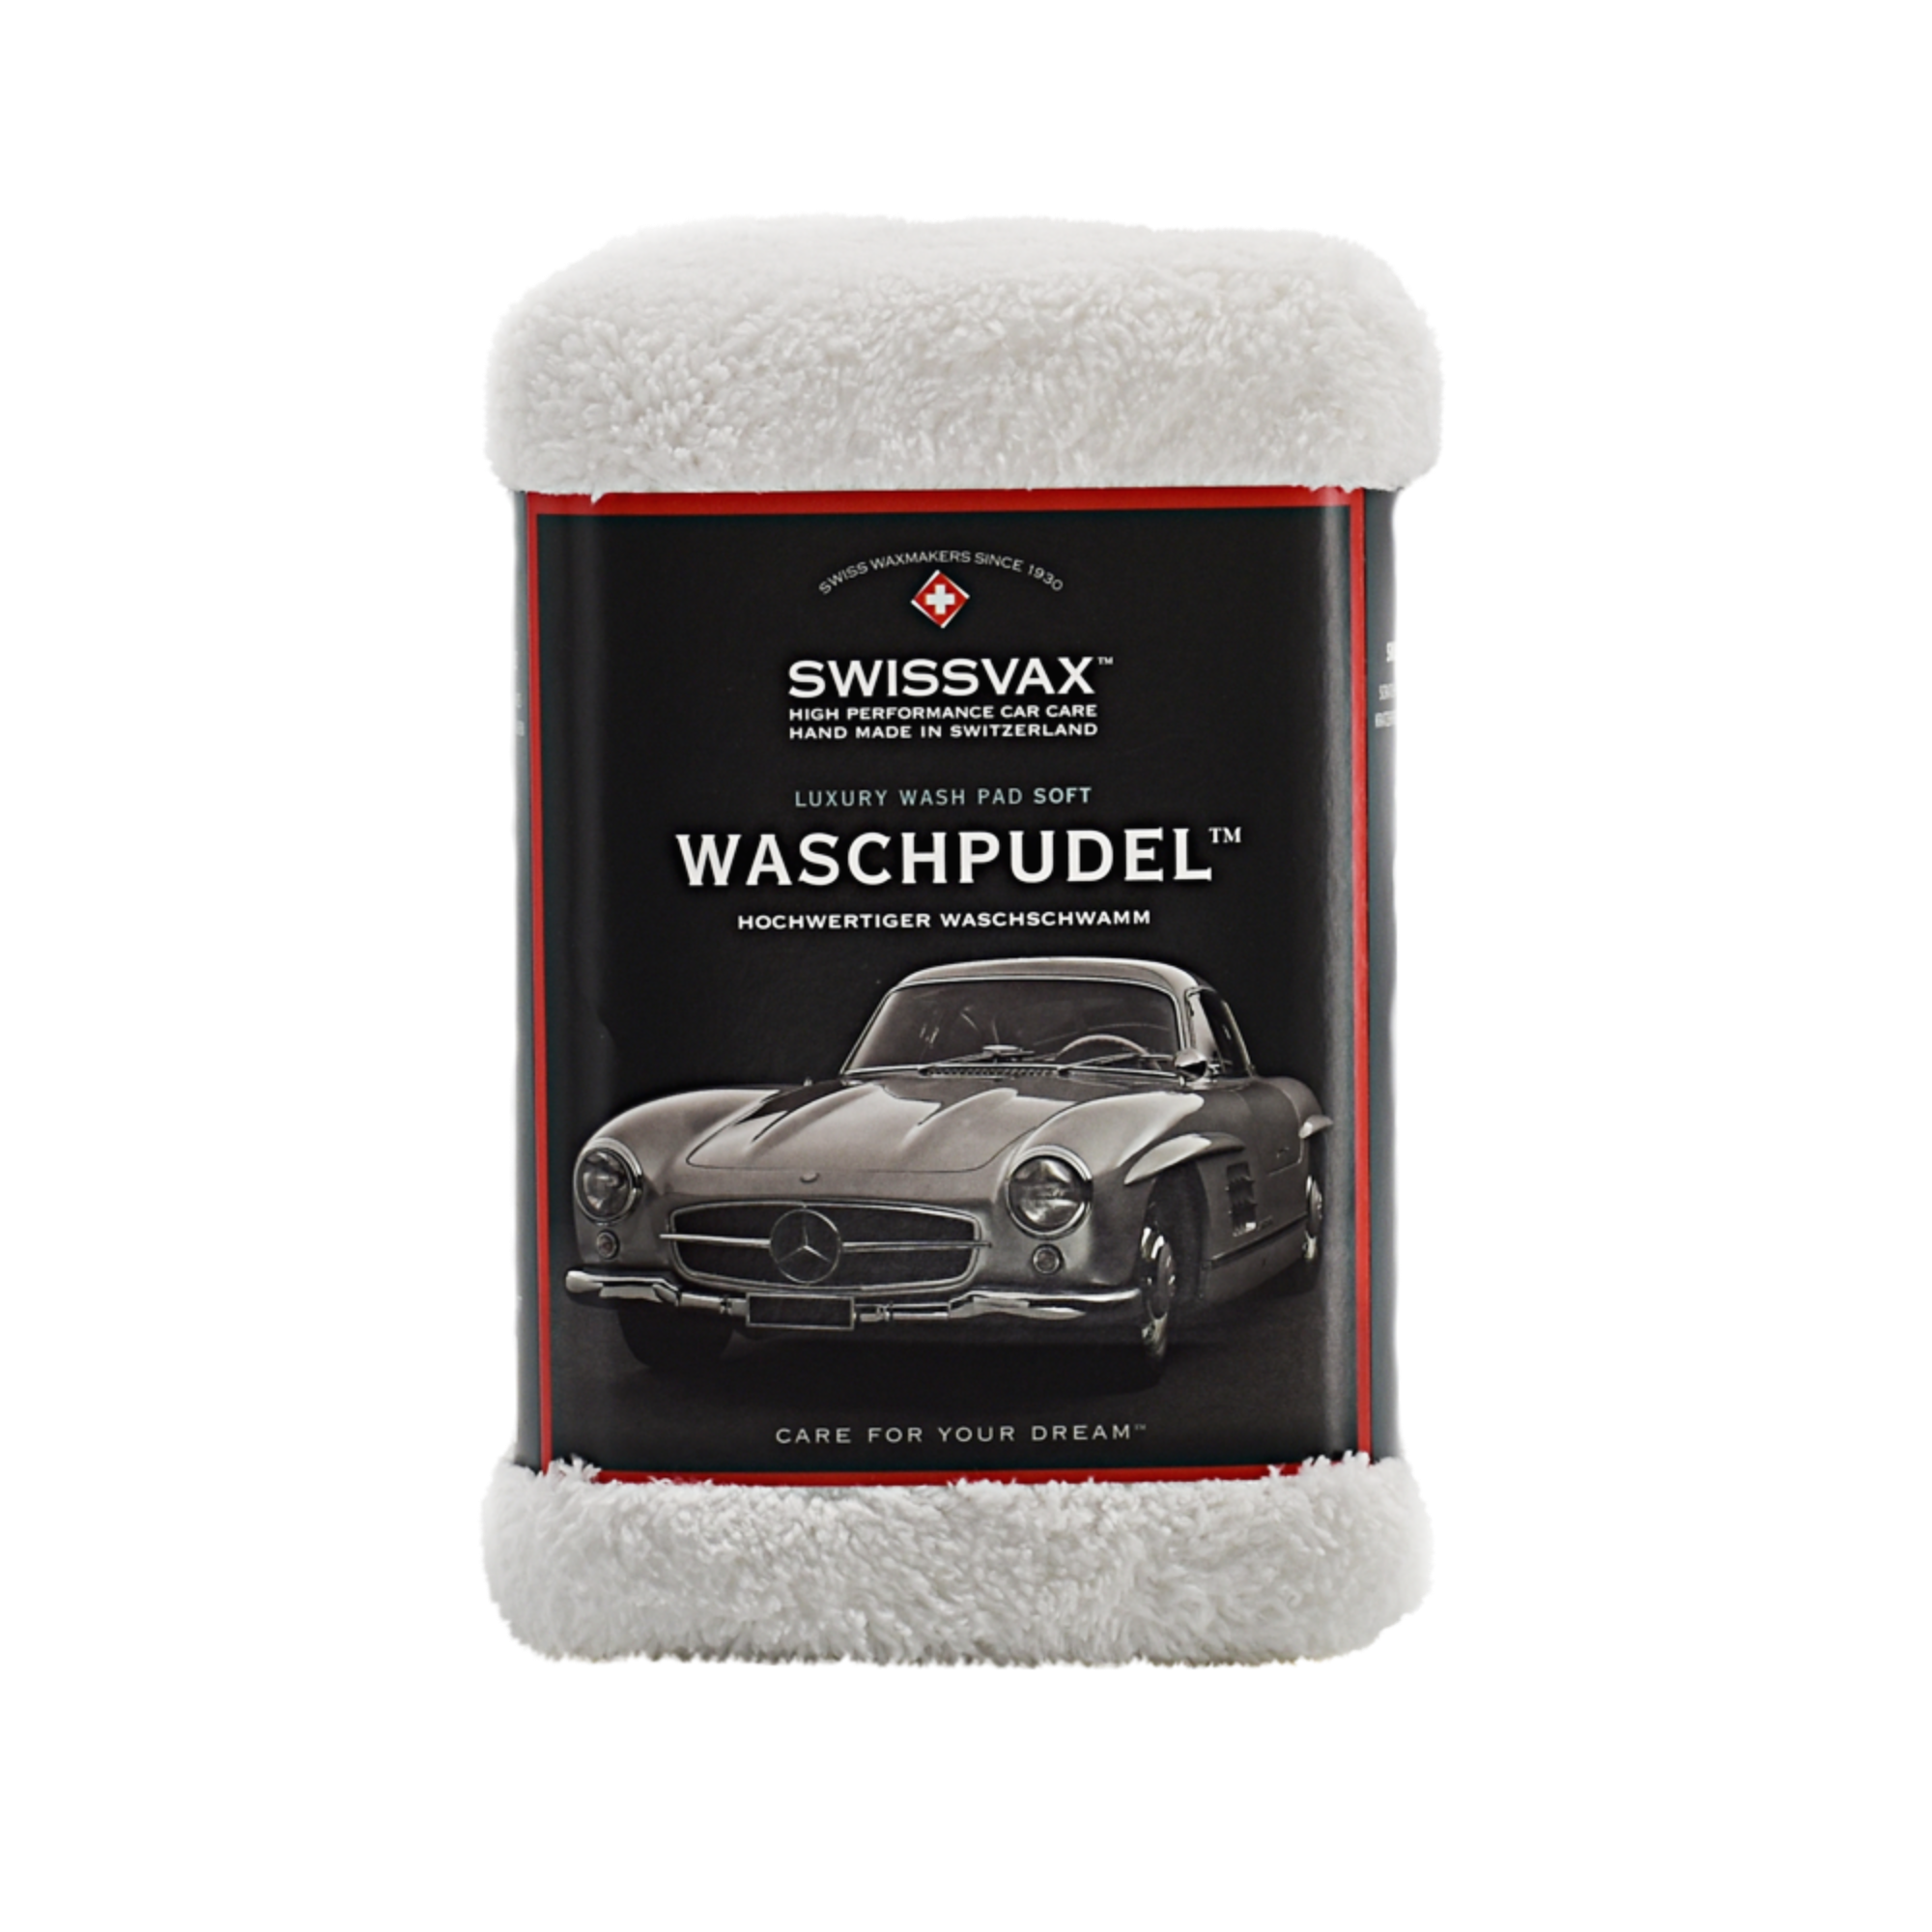 Swissvax WASHPUDEL - Ultra-Soft Luxury Wash Pad